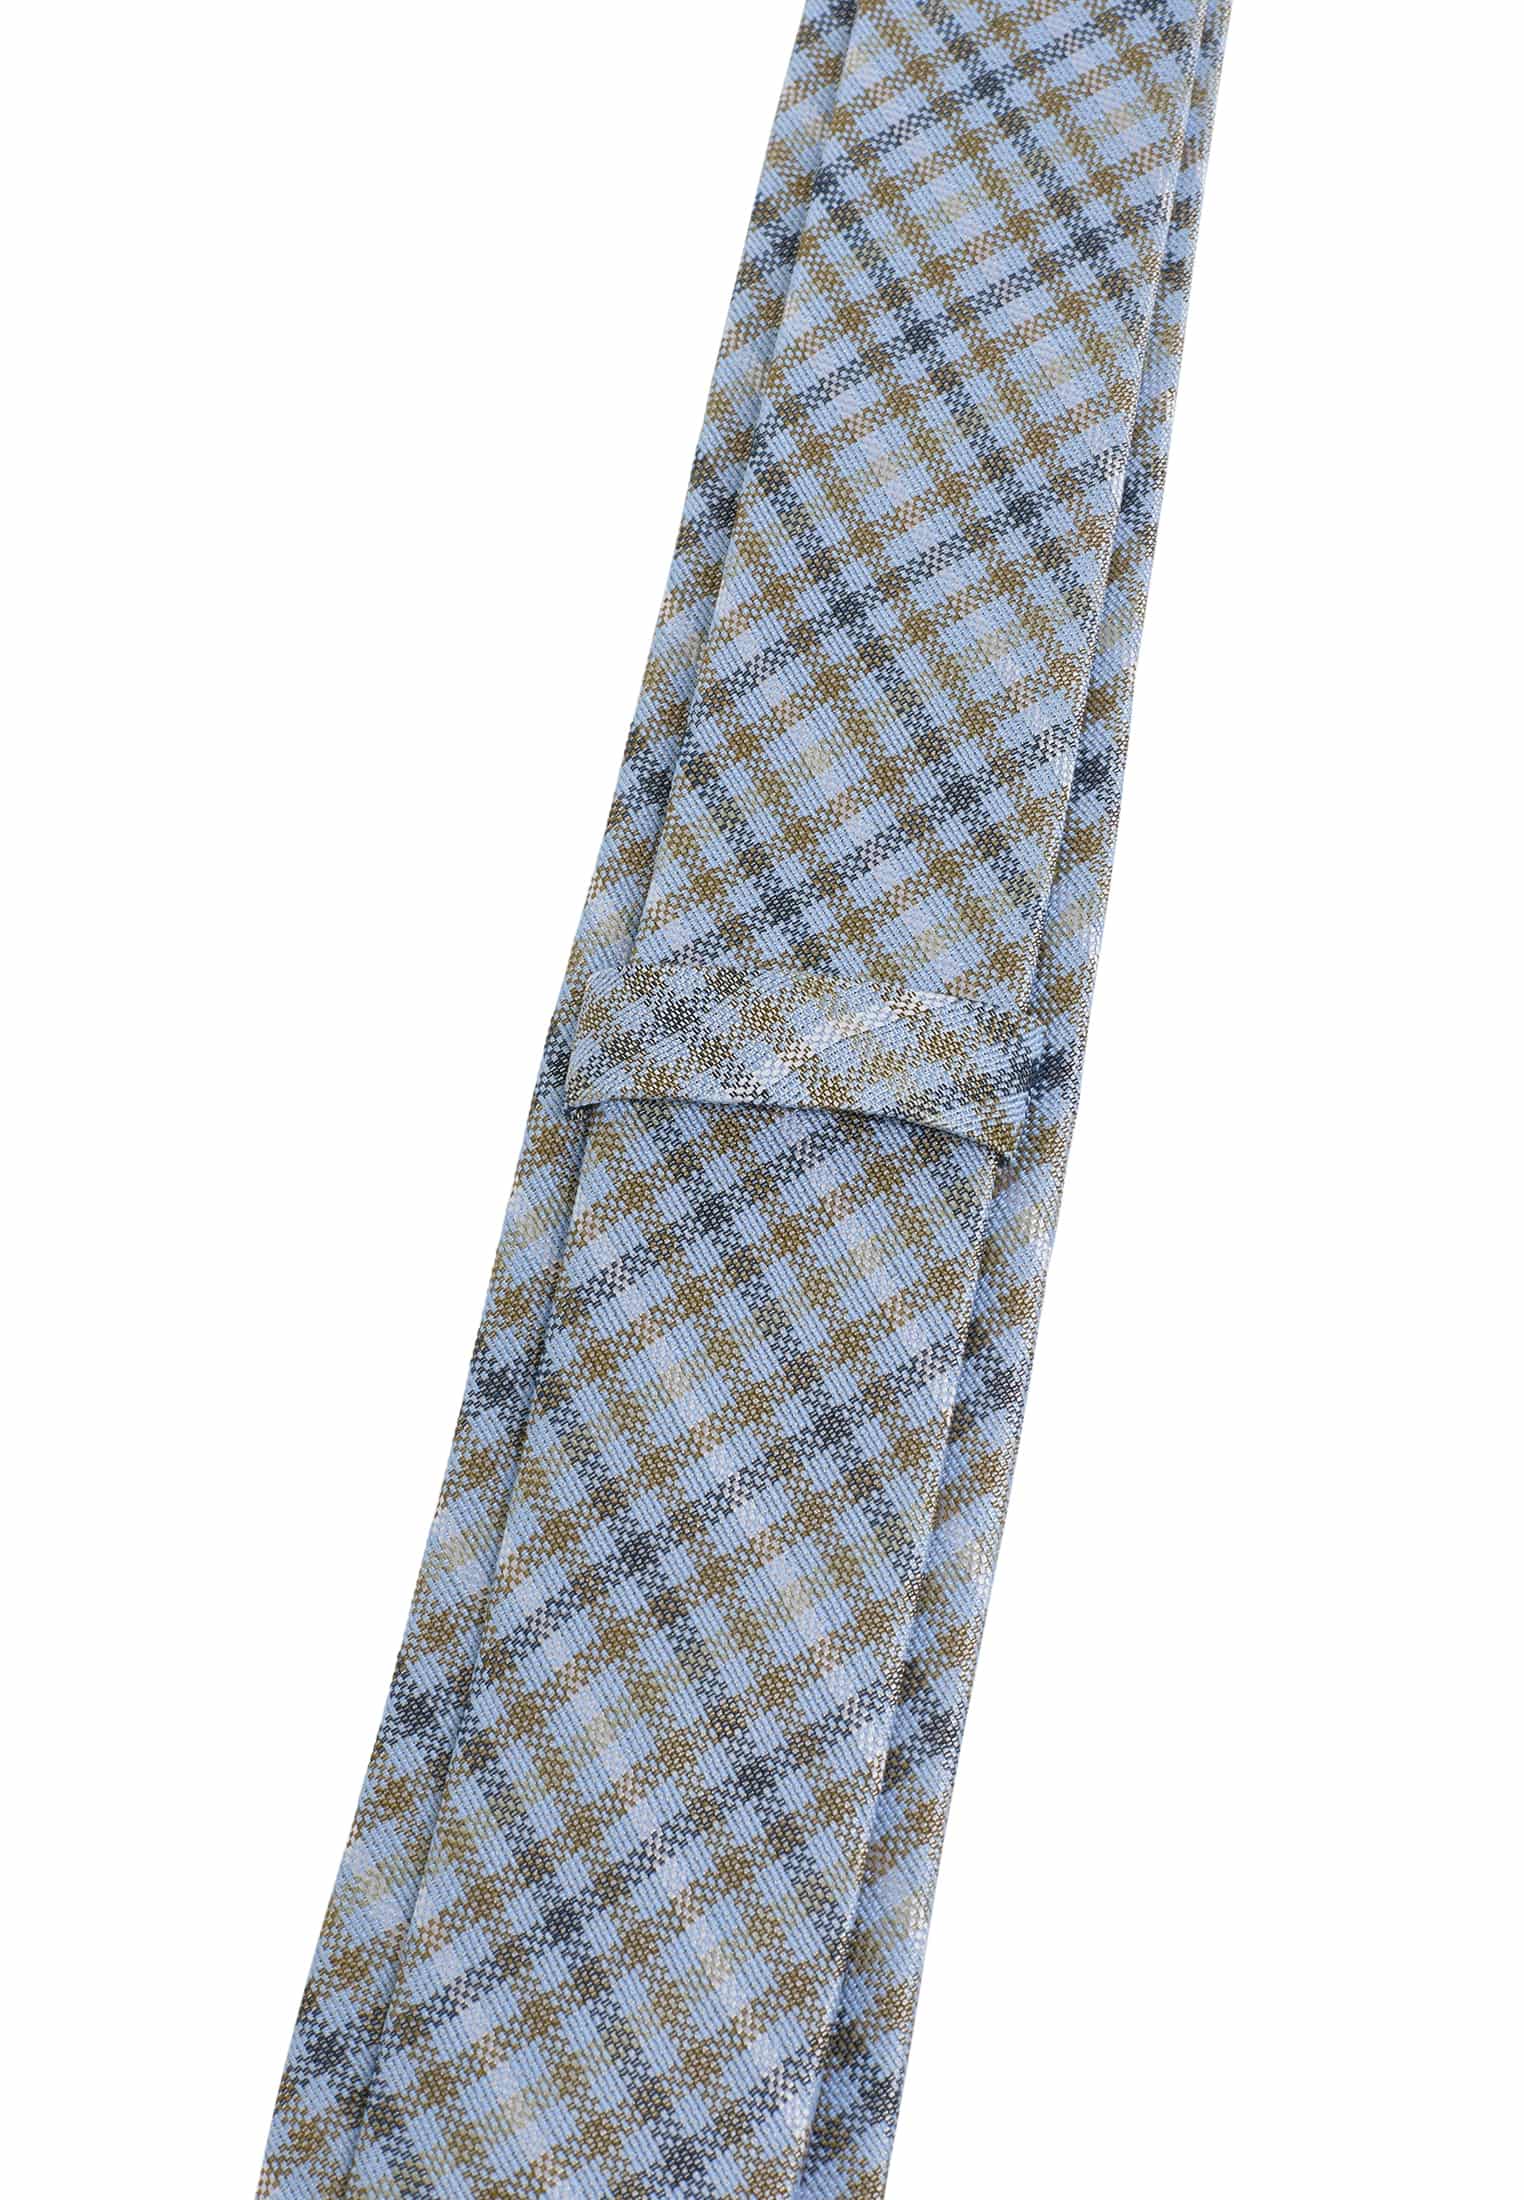 Krawatte in blau/grün kariert | blau/grün | 142 | 1AC01998-81-48-142